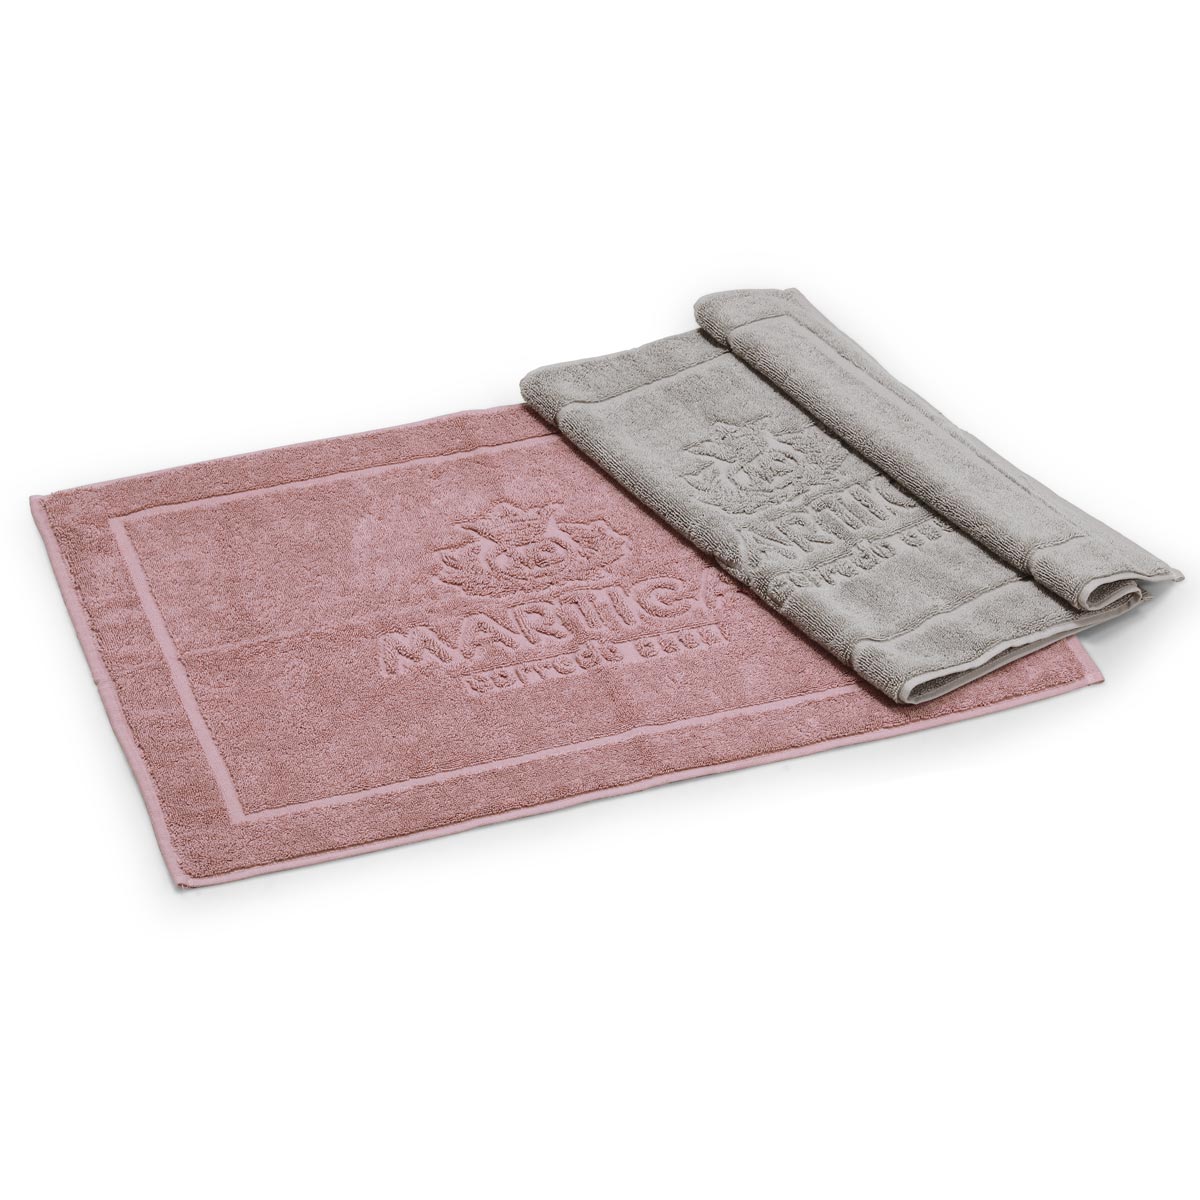 Set tappeti doccia in spugna di cotone colore grigio e vinaccia -  Idrospugna